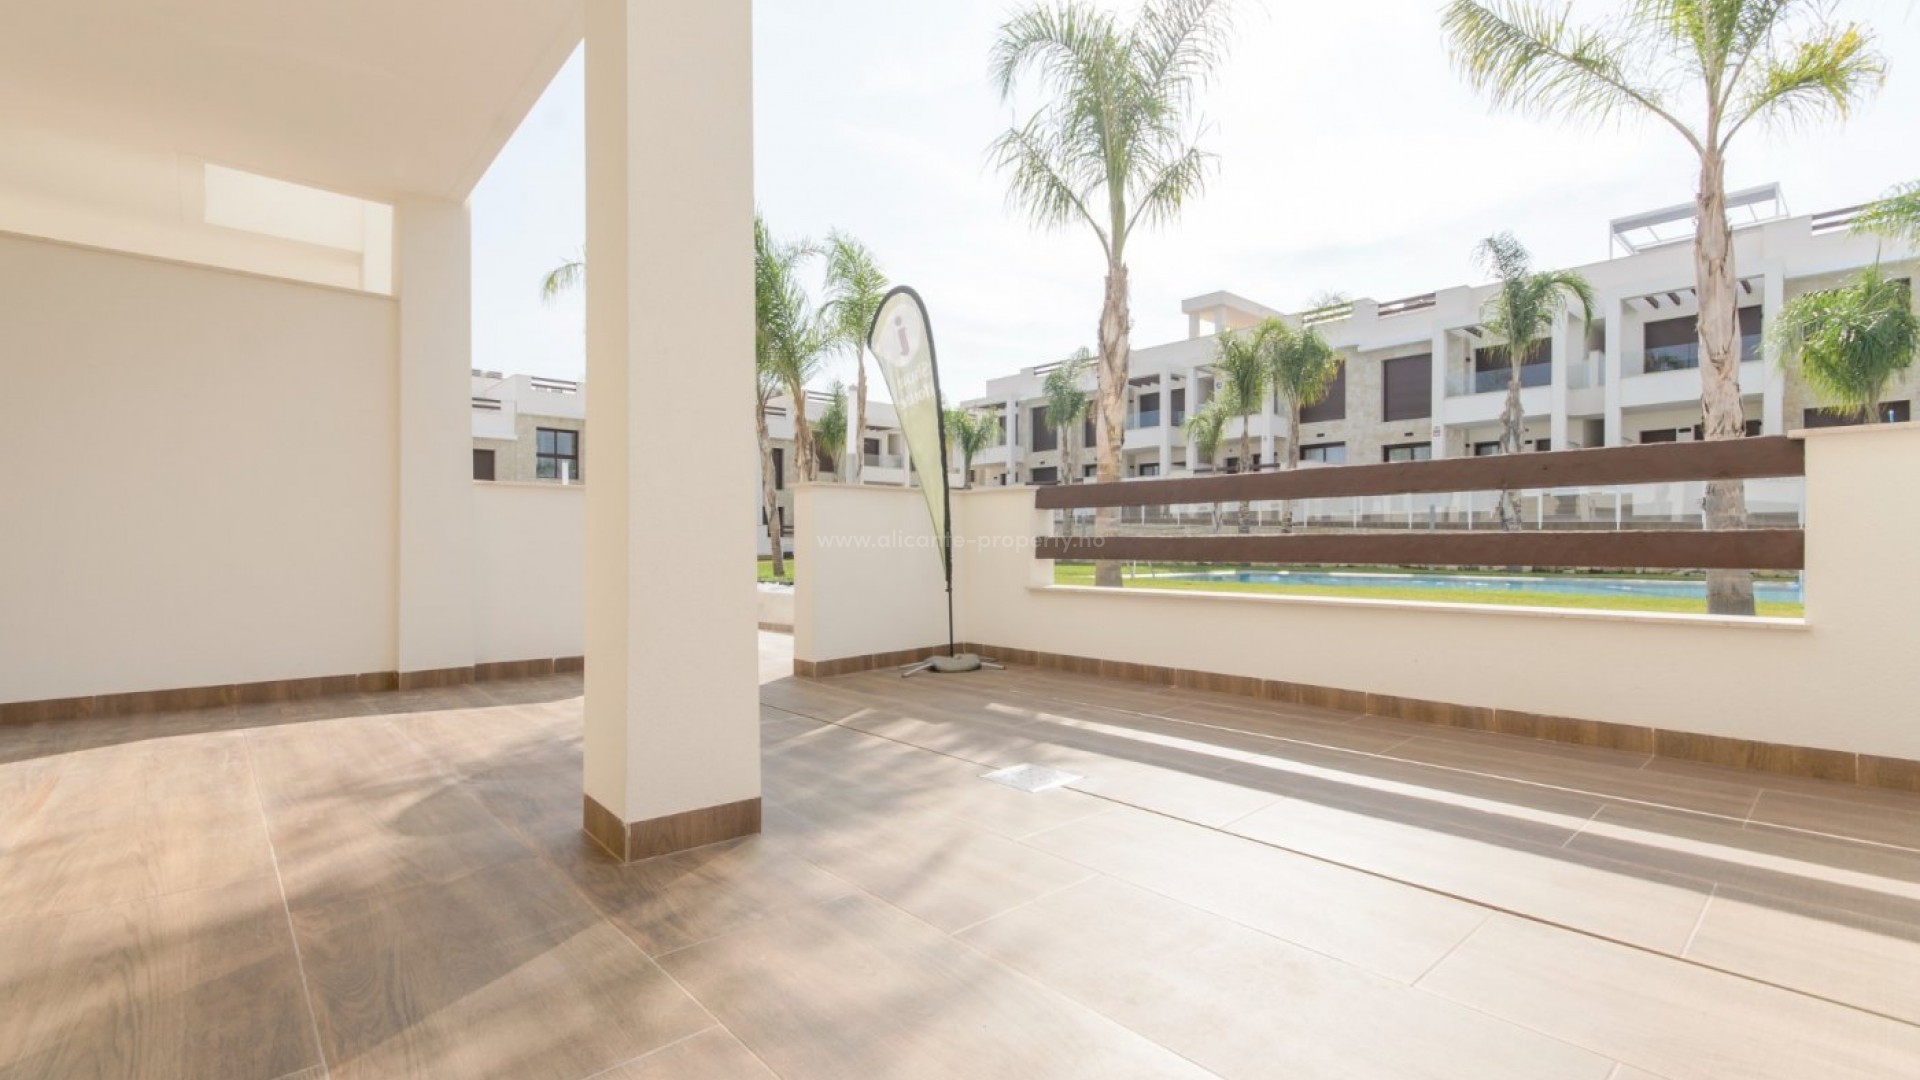 Nye bungalow-leiligheter i Los Balcones, Torrevieja, 2/3 soverom, store terrasser, toppetasje med privat solarium med panoramautsikt, felles bassenger